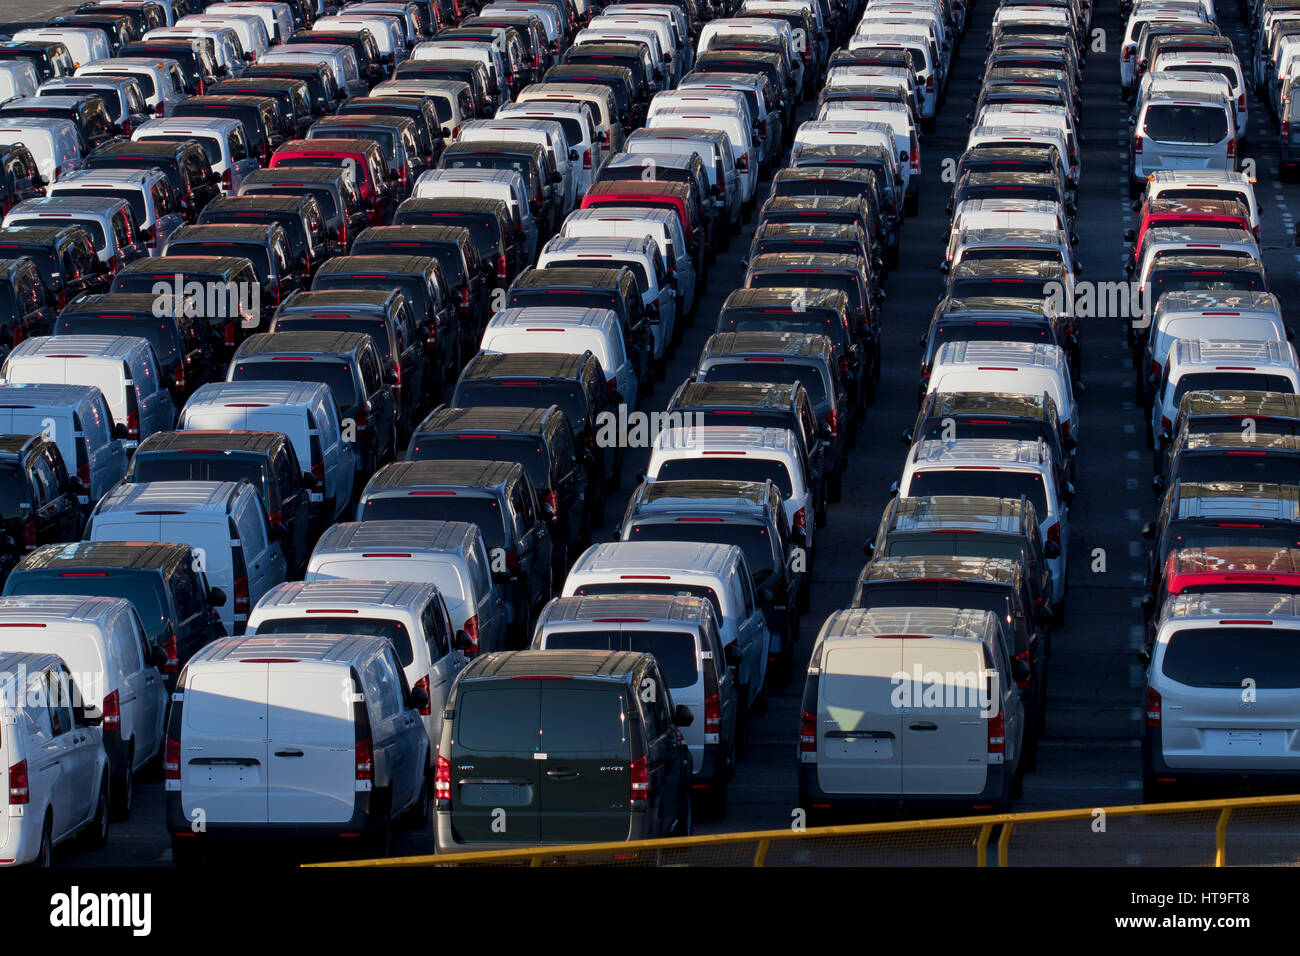 Immagine di sfondo delle linee della nuova Mercedes furgoni parcheggiati in Pasajes seaport (Paesi Baschi, Spagna) 2017. Foto Stock